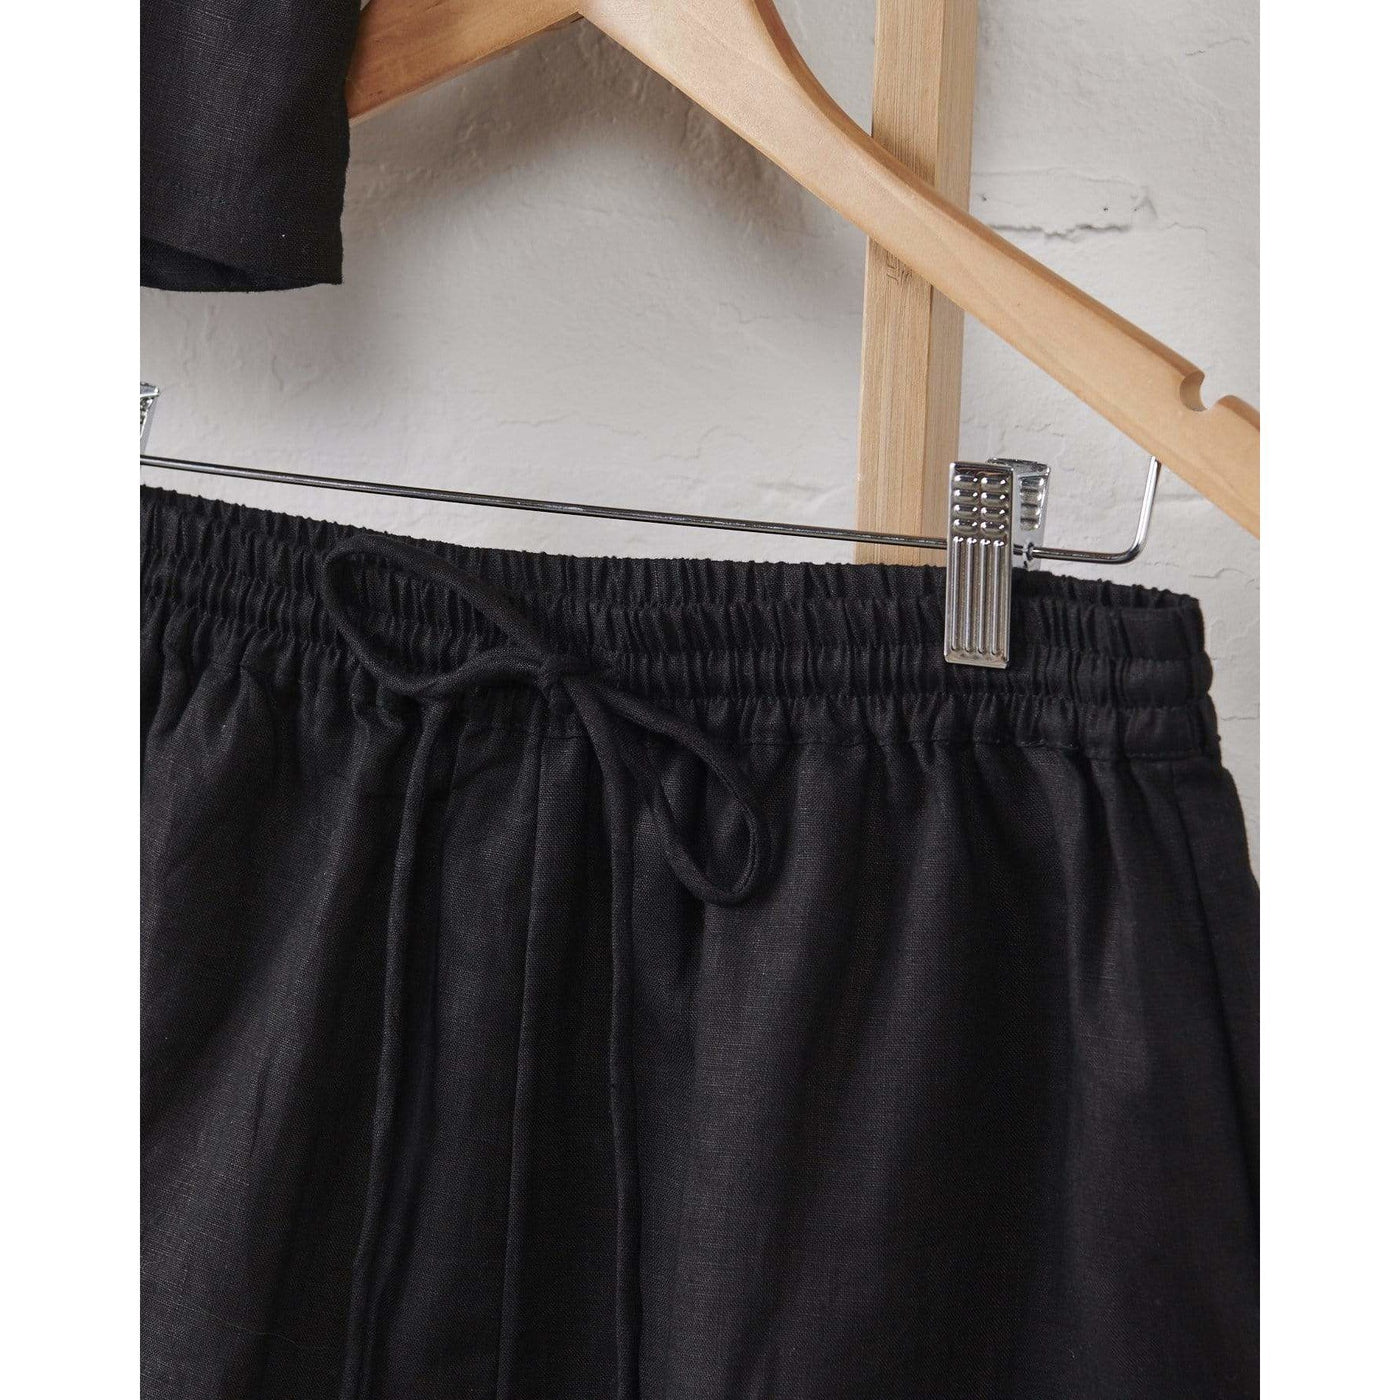 Linen Shorts - Black-Jade and May-Pajamas-Jade and May